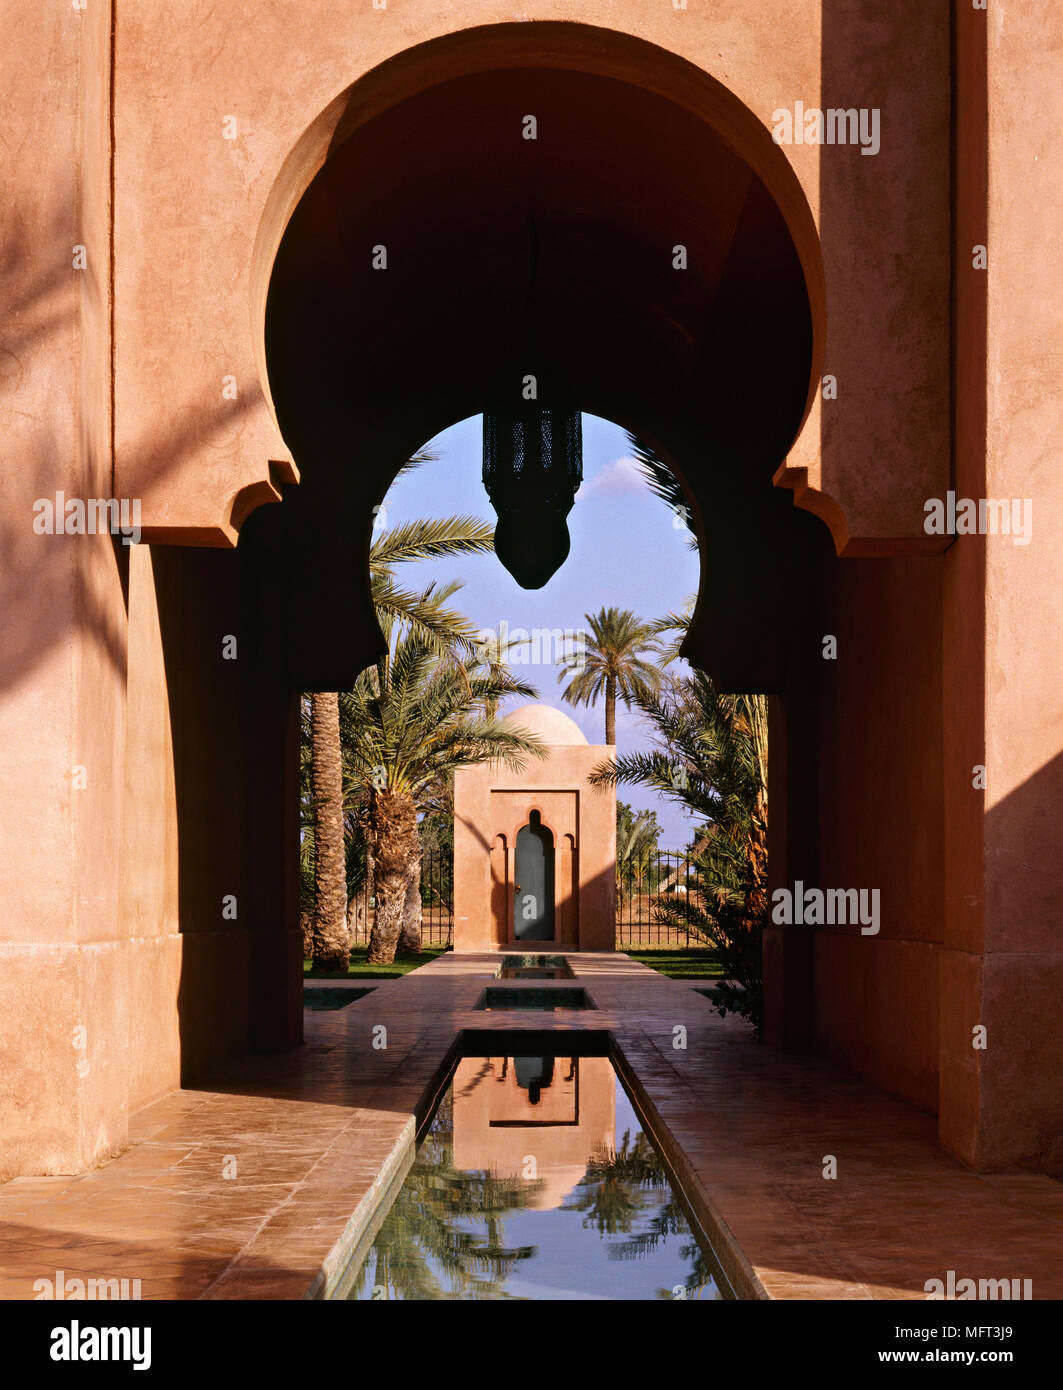 Esterno casa marocchina palme piscina di acqua esterni architettura arabo moresco arabico Foto Stock